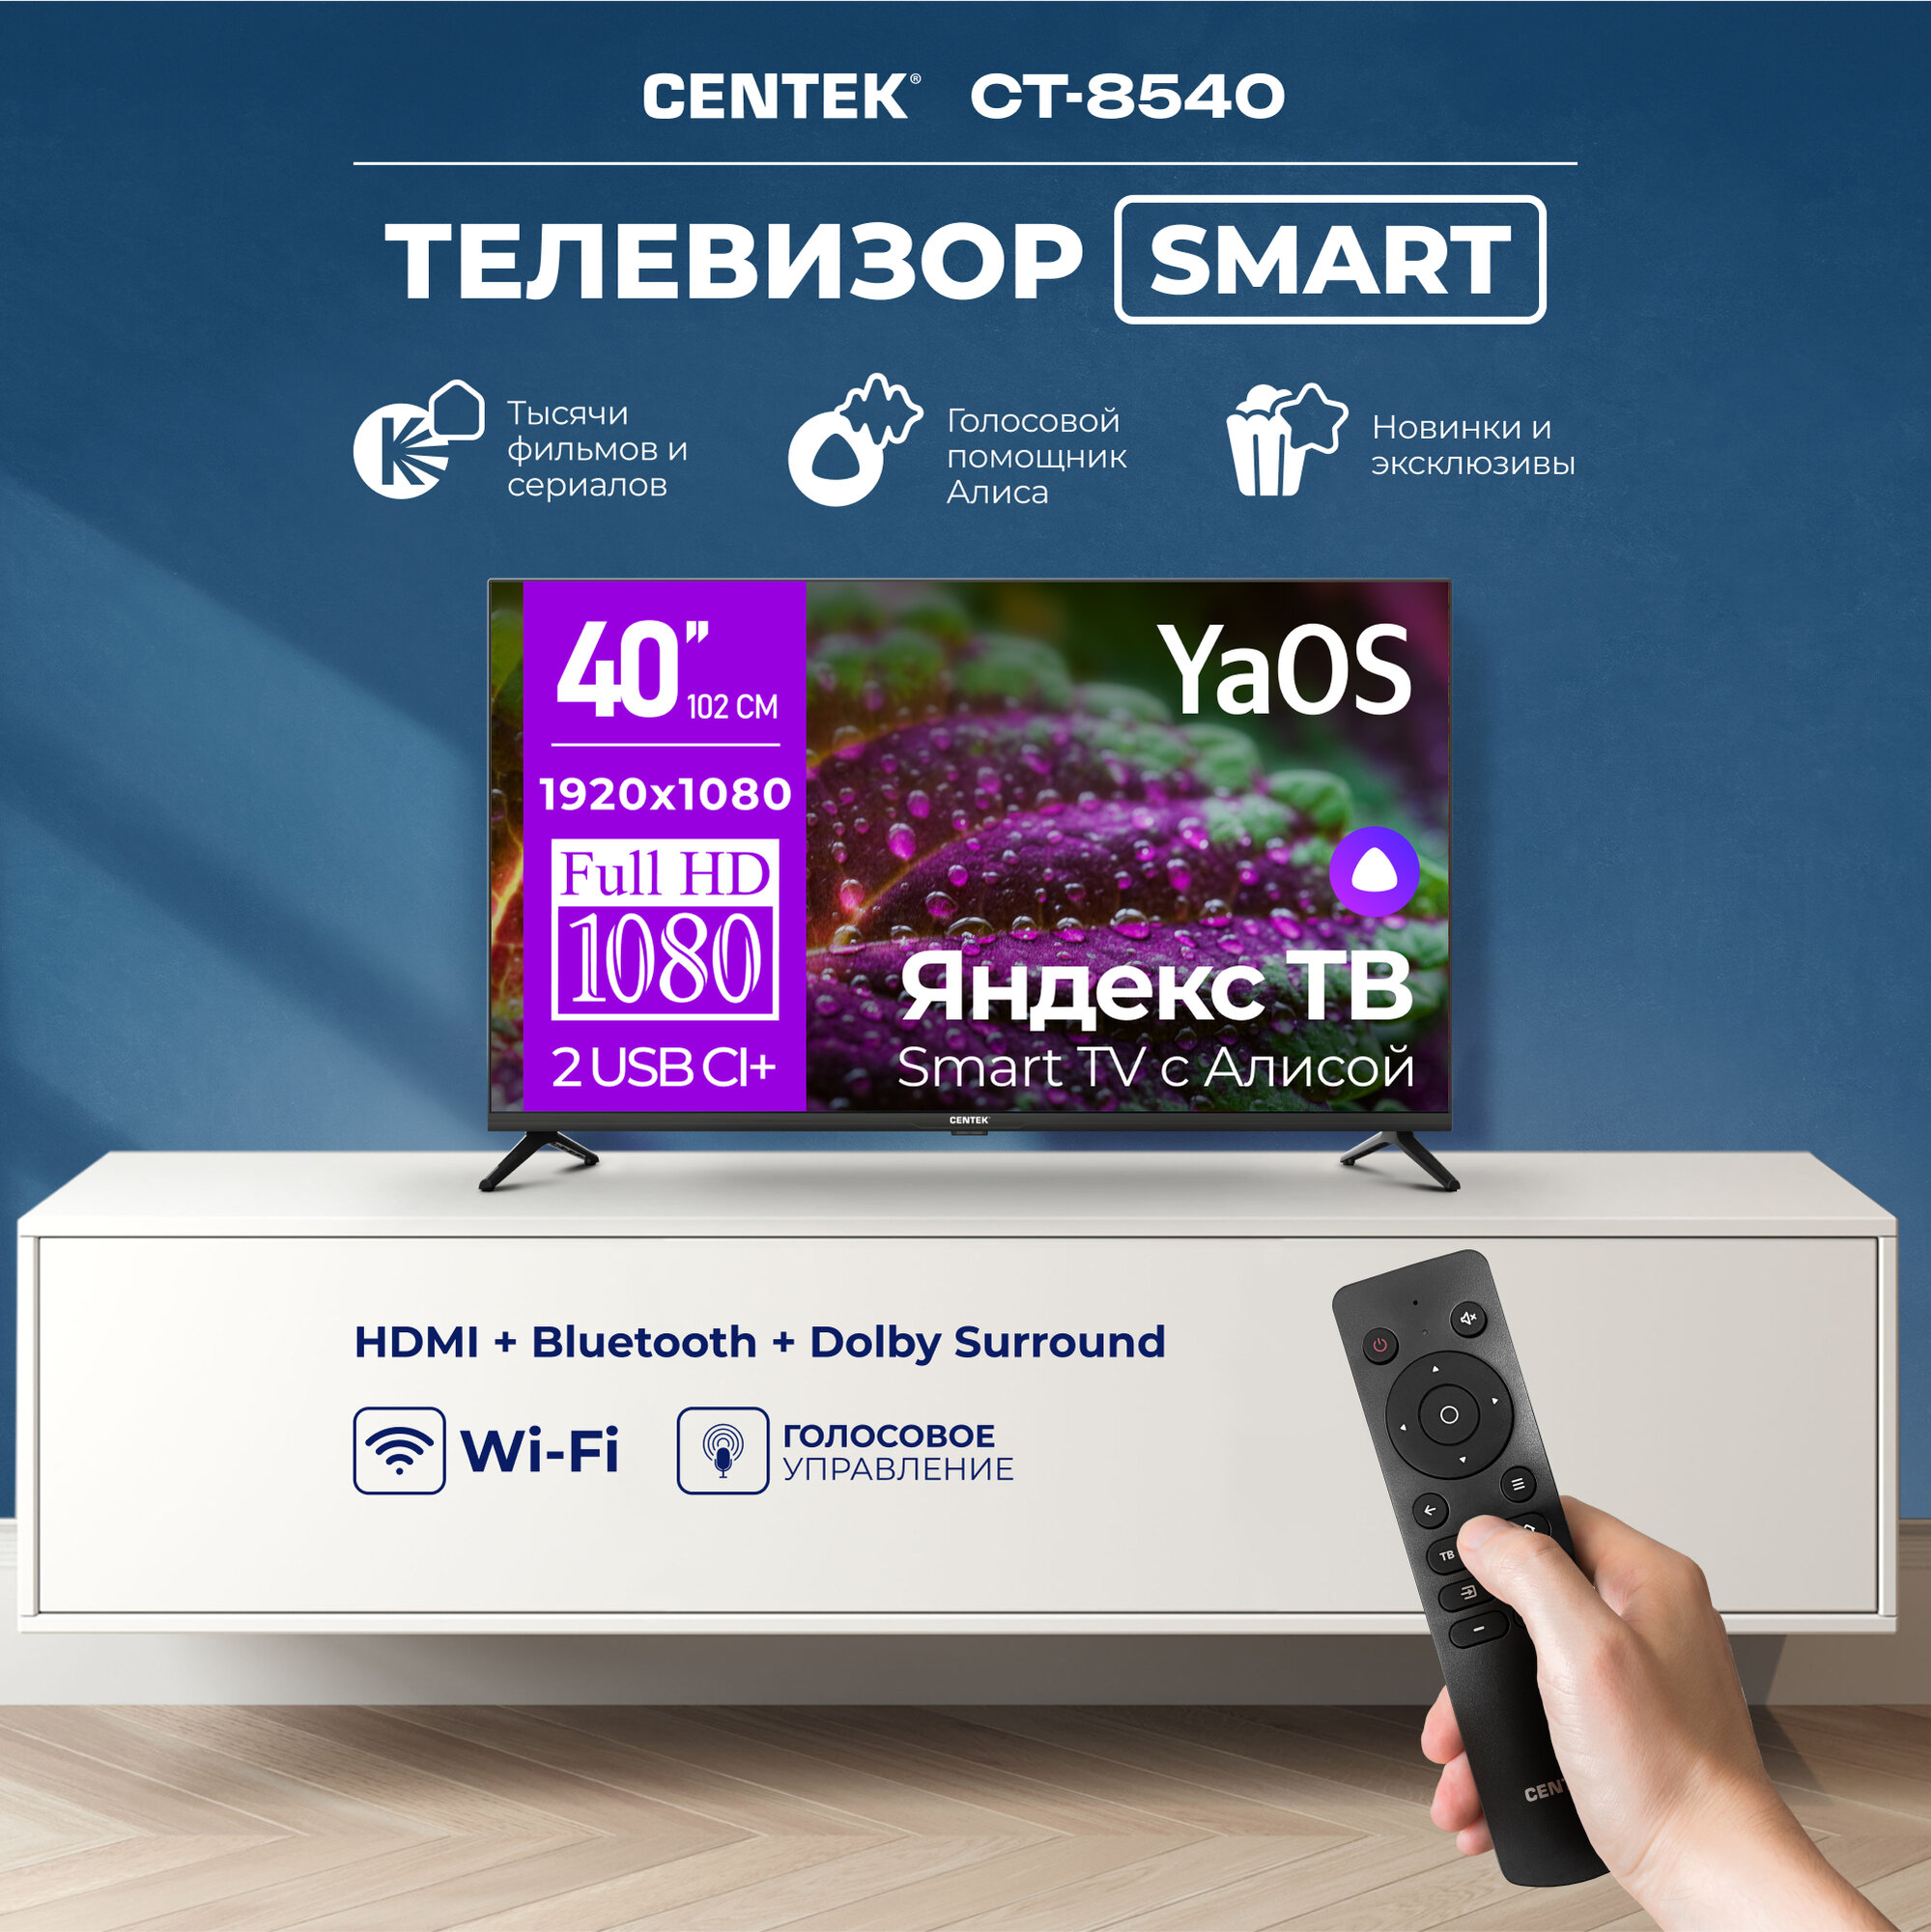 Телевизор Centek CT-8740 SMART, 40 дюймов, FullHD, Wi-Fi, Bluetooth, HDMIx3, USBx2, DVB-T/T2 Яндекс YaOS